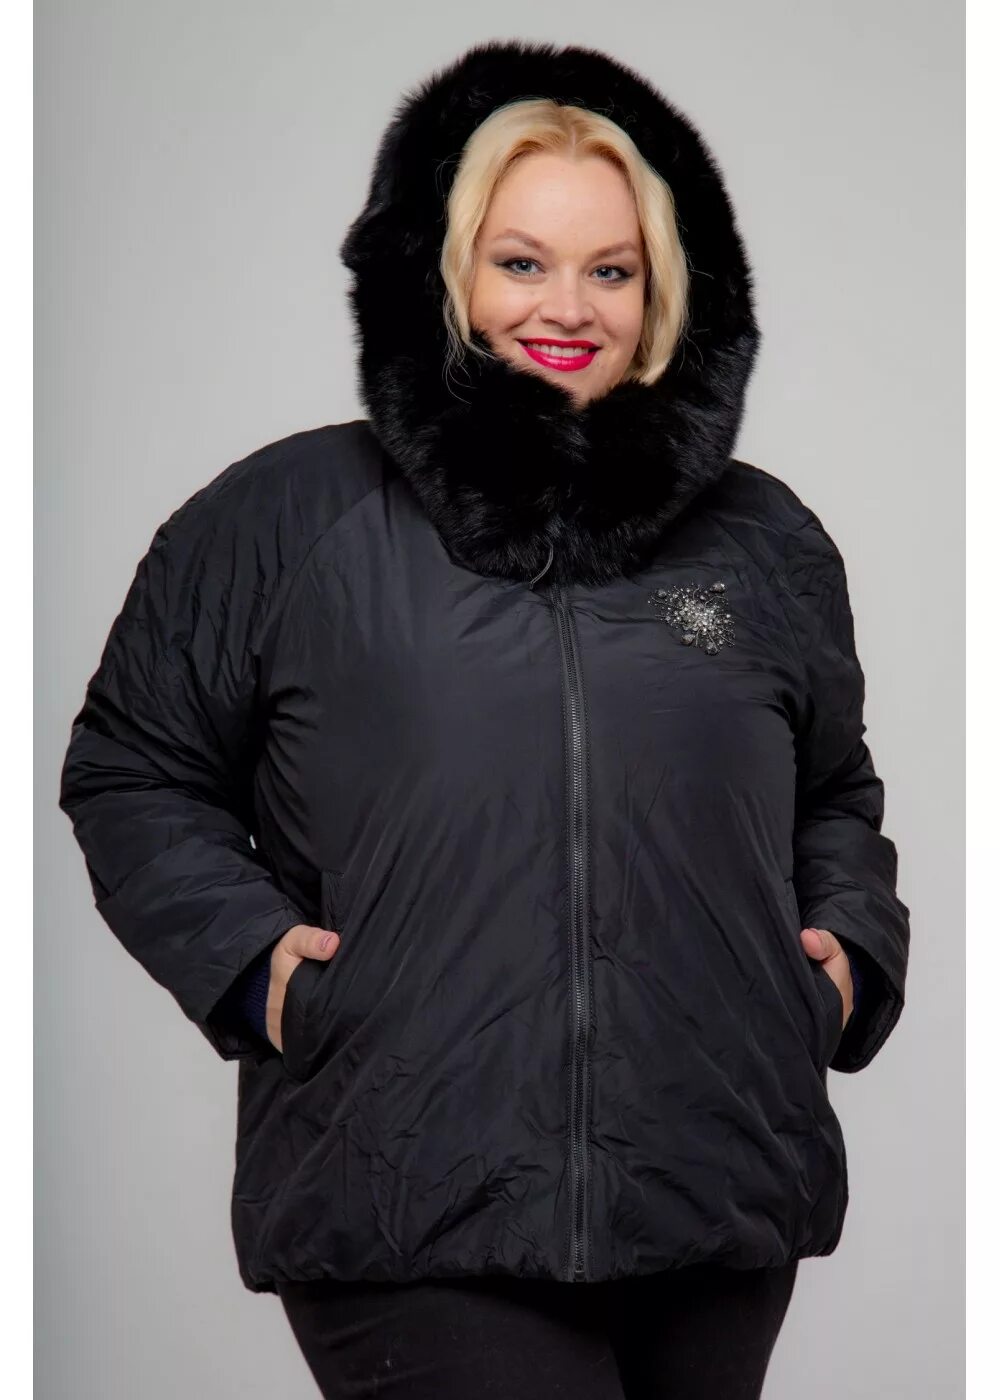 Зимние куртки женские больших размеров. Куртки..женские.больших раз. Куртки для полных женщин зимние. Зимняя куртка женская большого размера.